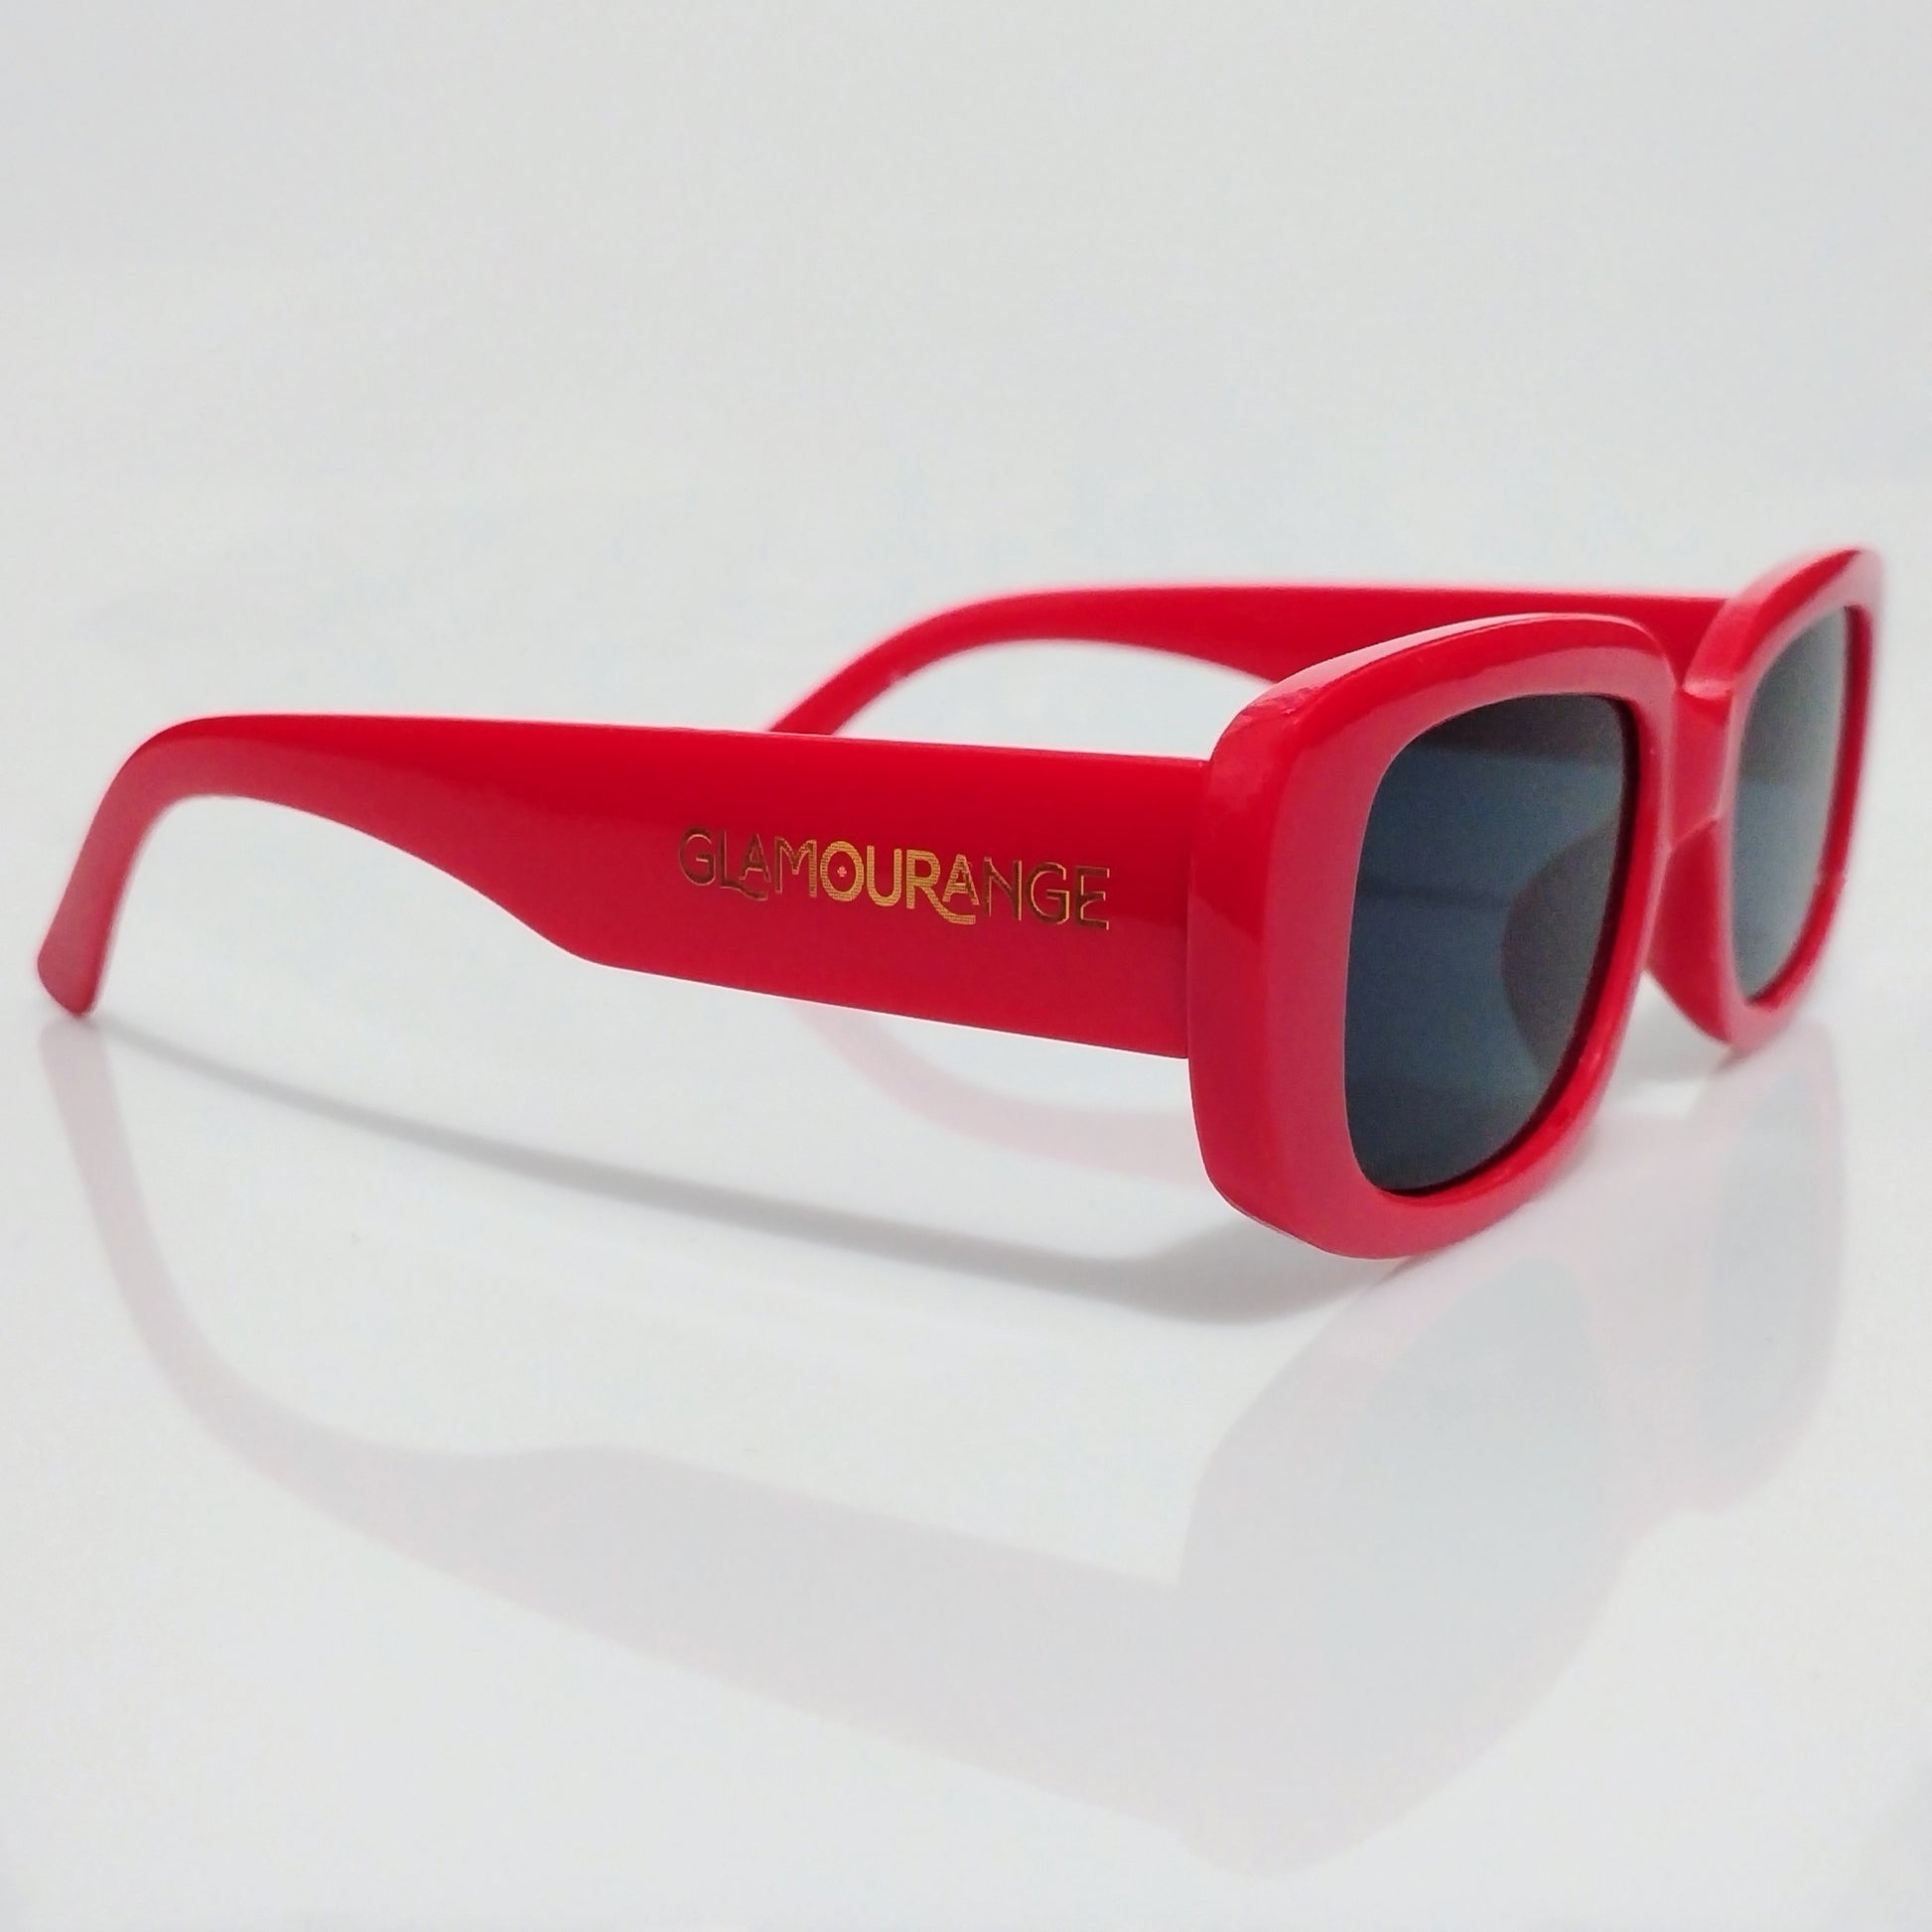 Glamourange Sunglasses Model GR-1008 C8